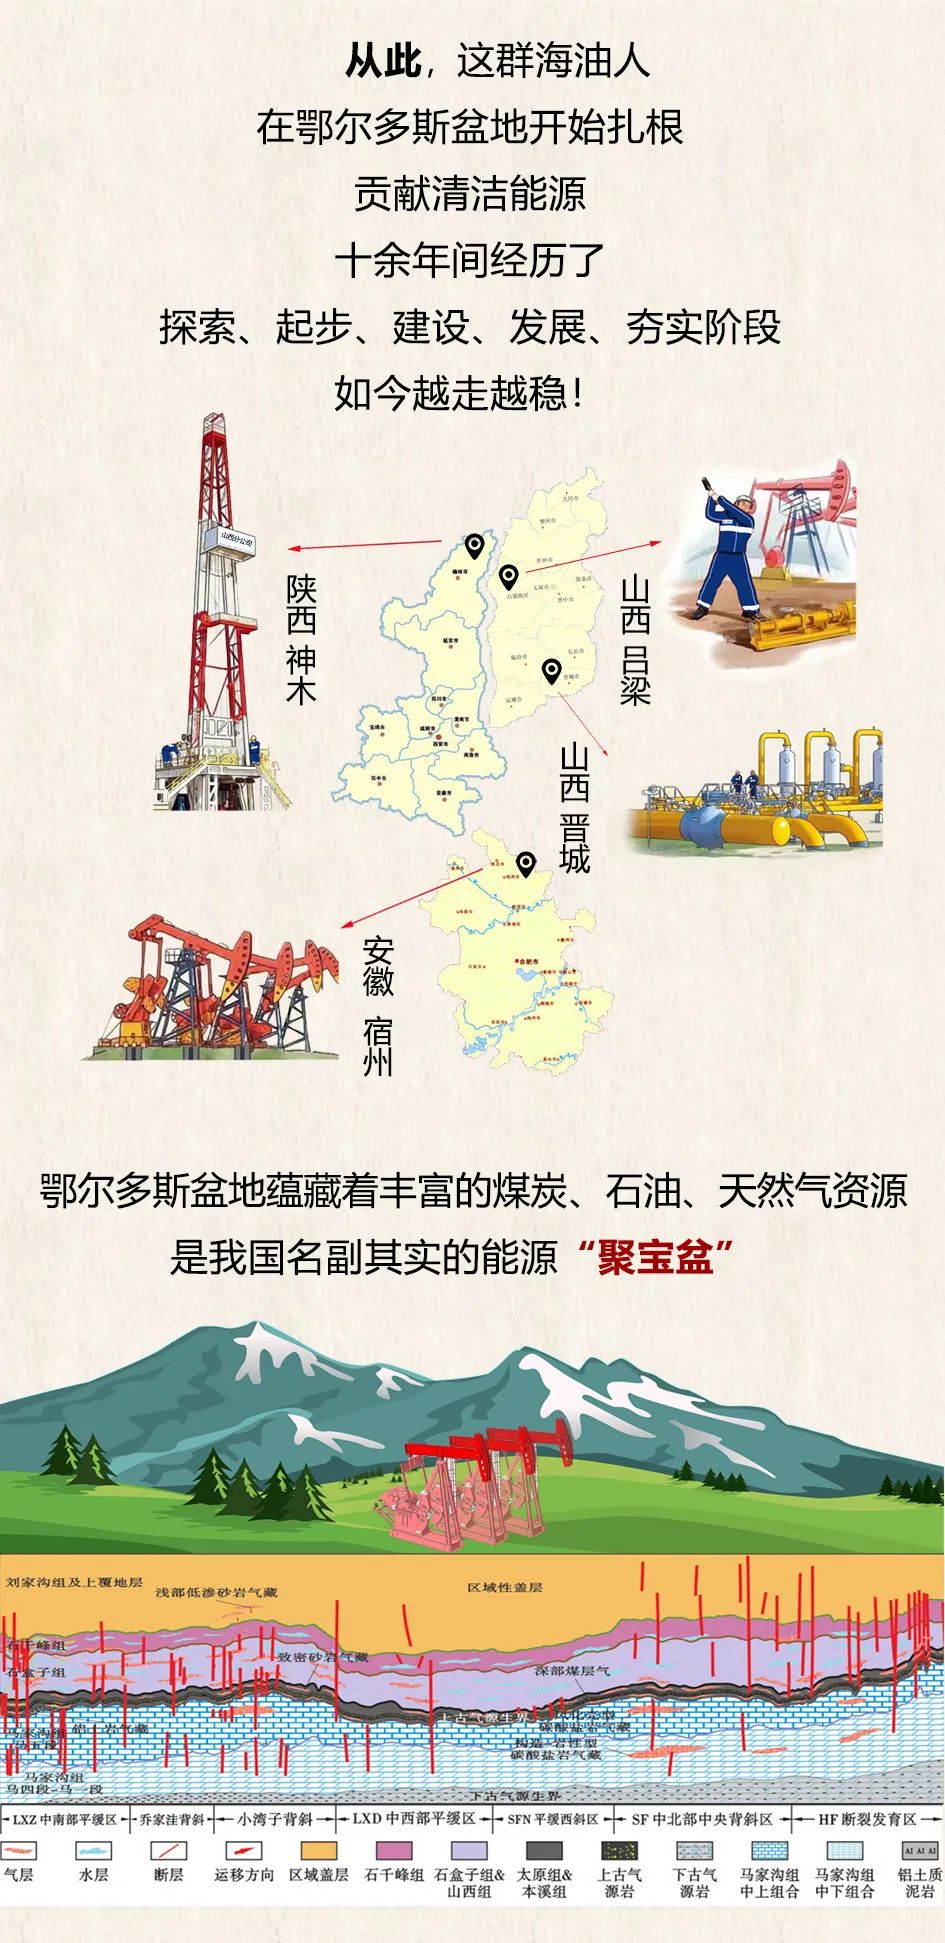 中海油HAILOONG FRAC（''海龙压裂) 系列技术贡献品牌价值！